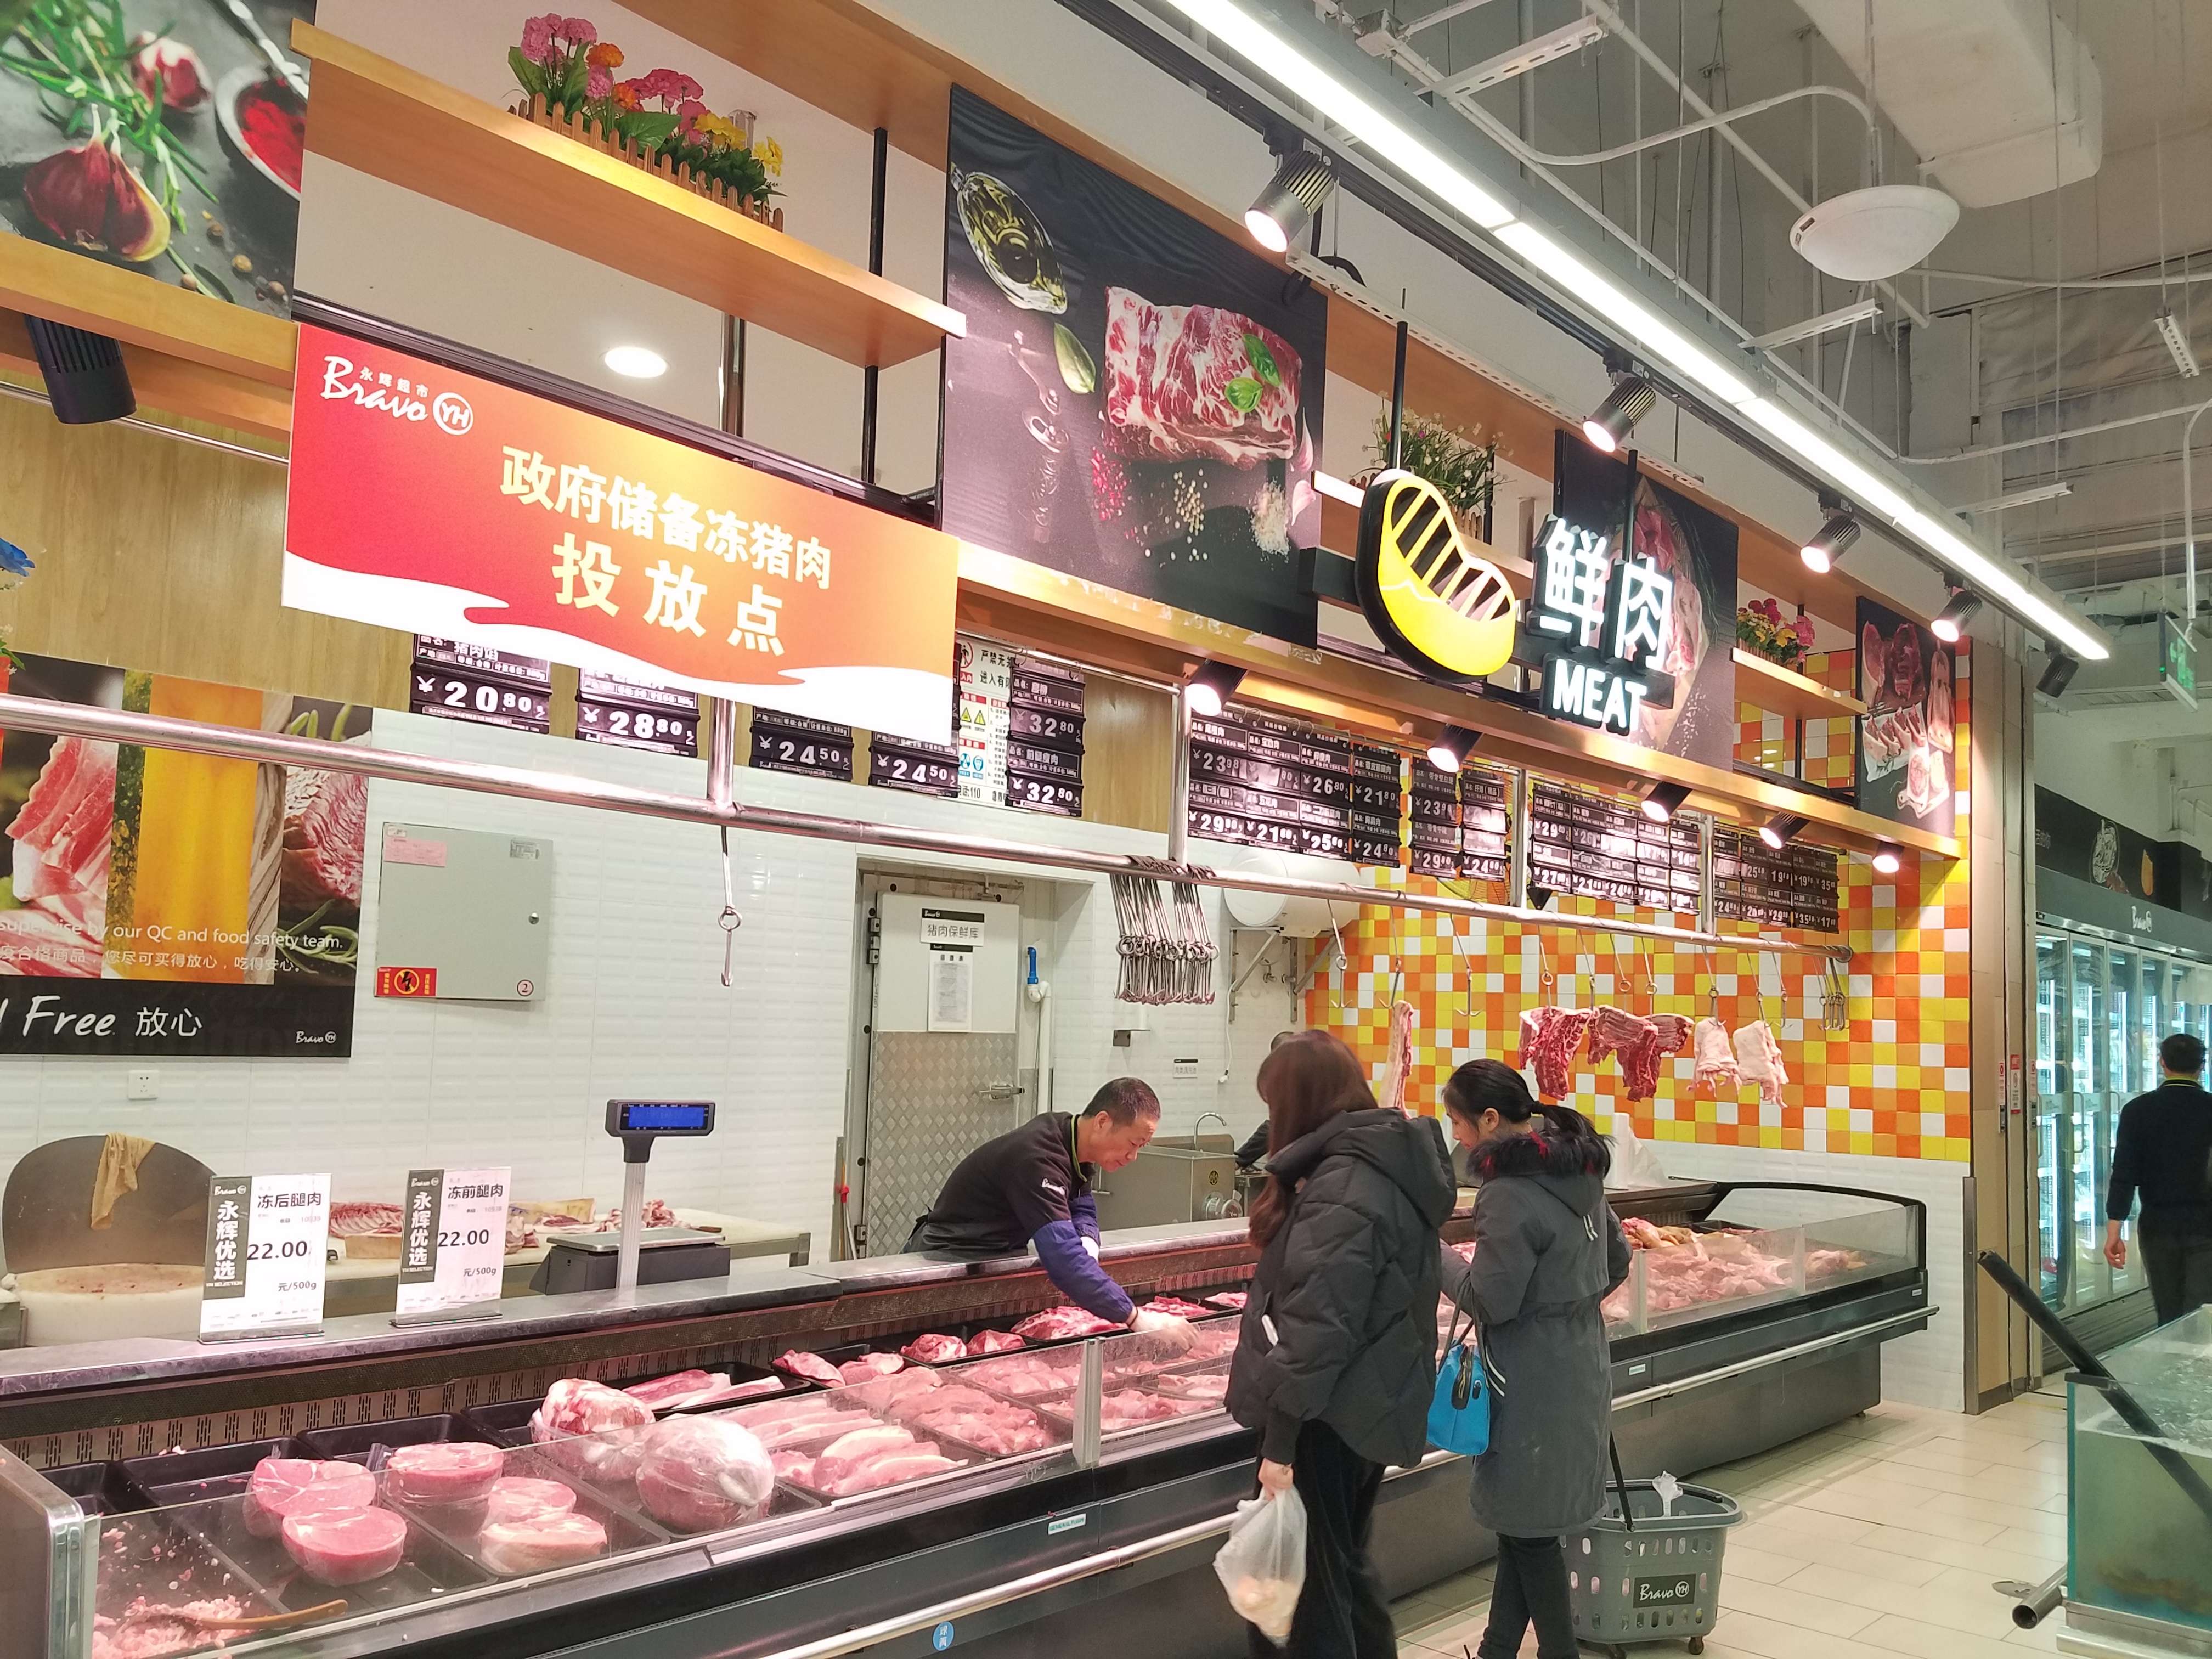 12月22日对重庆永辉超市现场调研情况,总结如下,冻猪肉的上市投放对